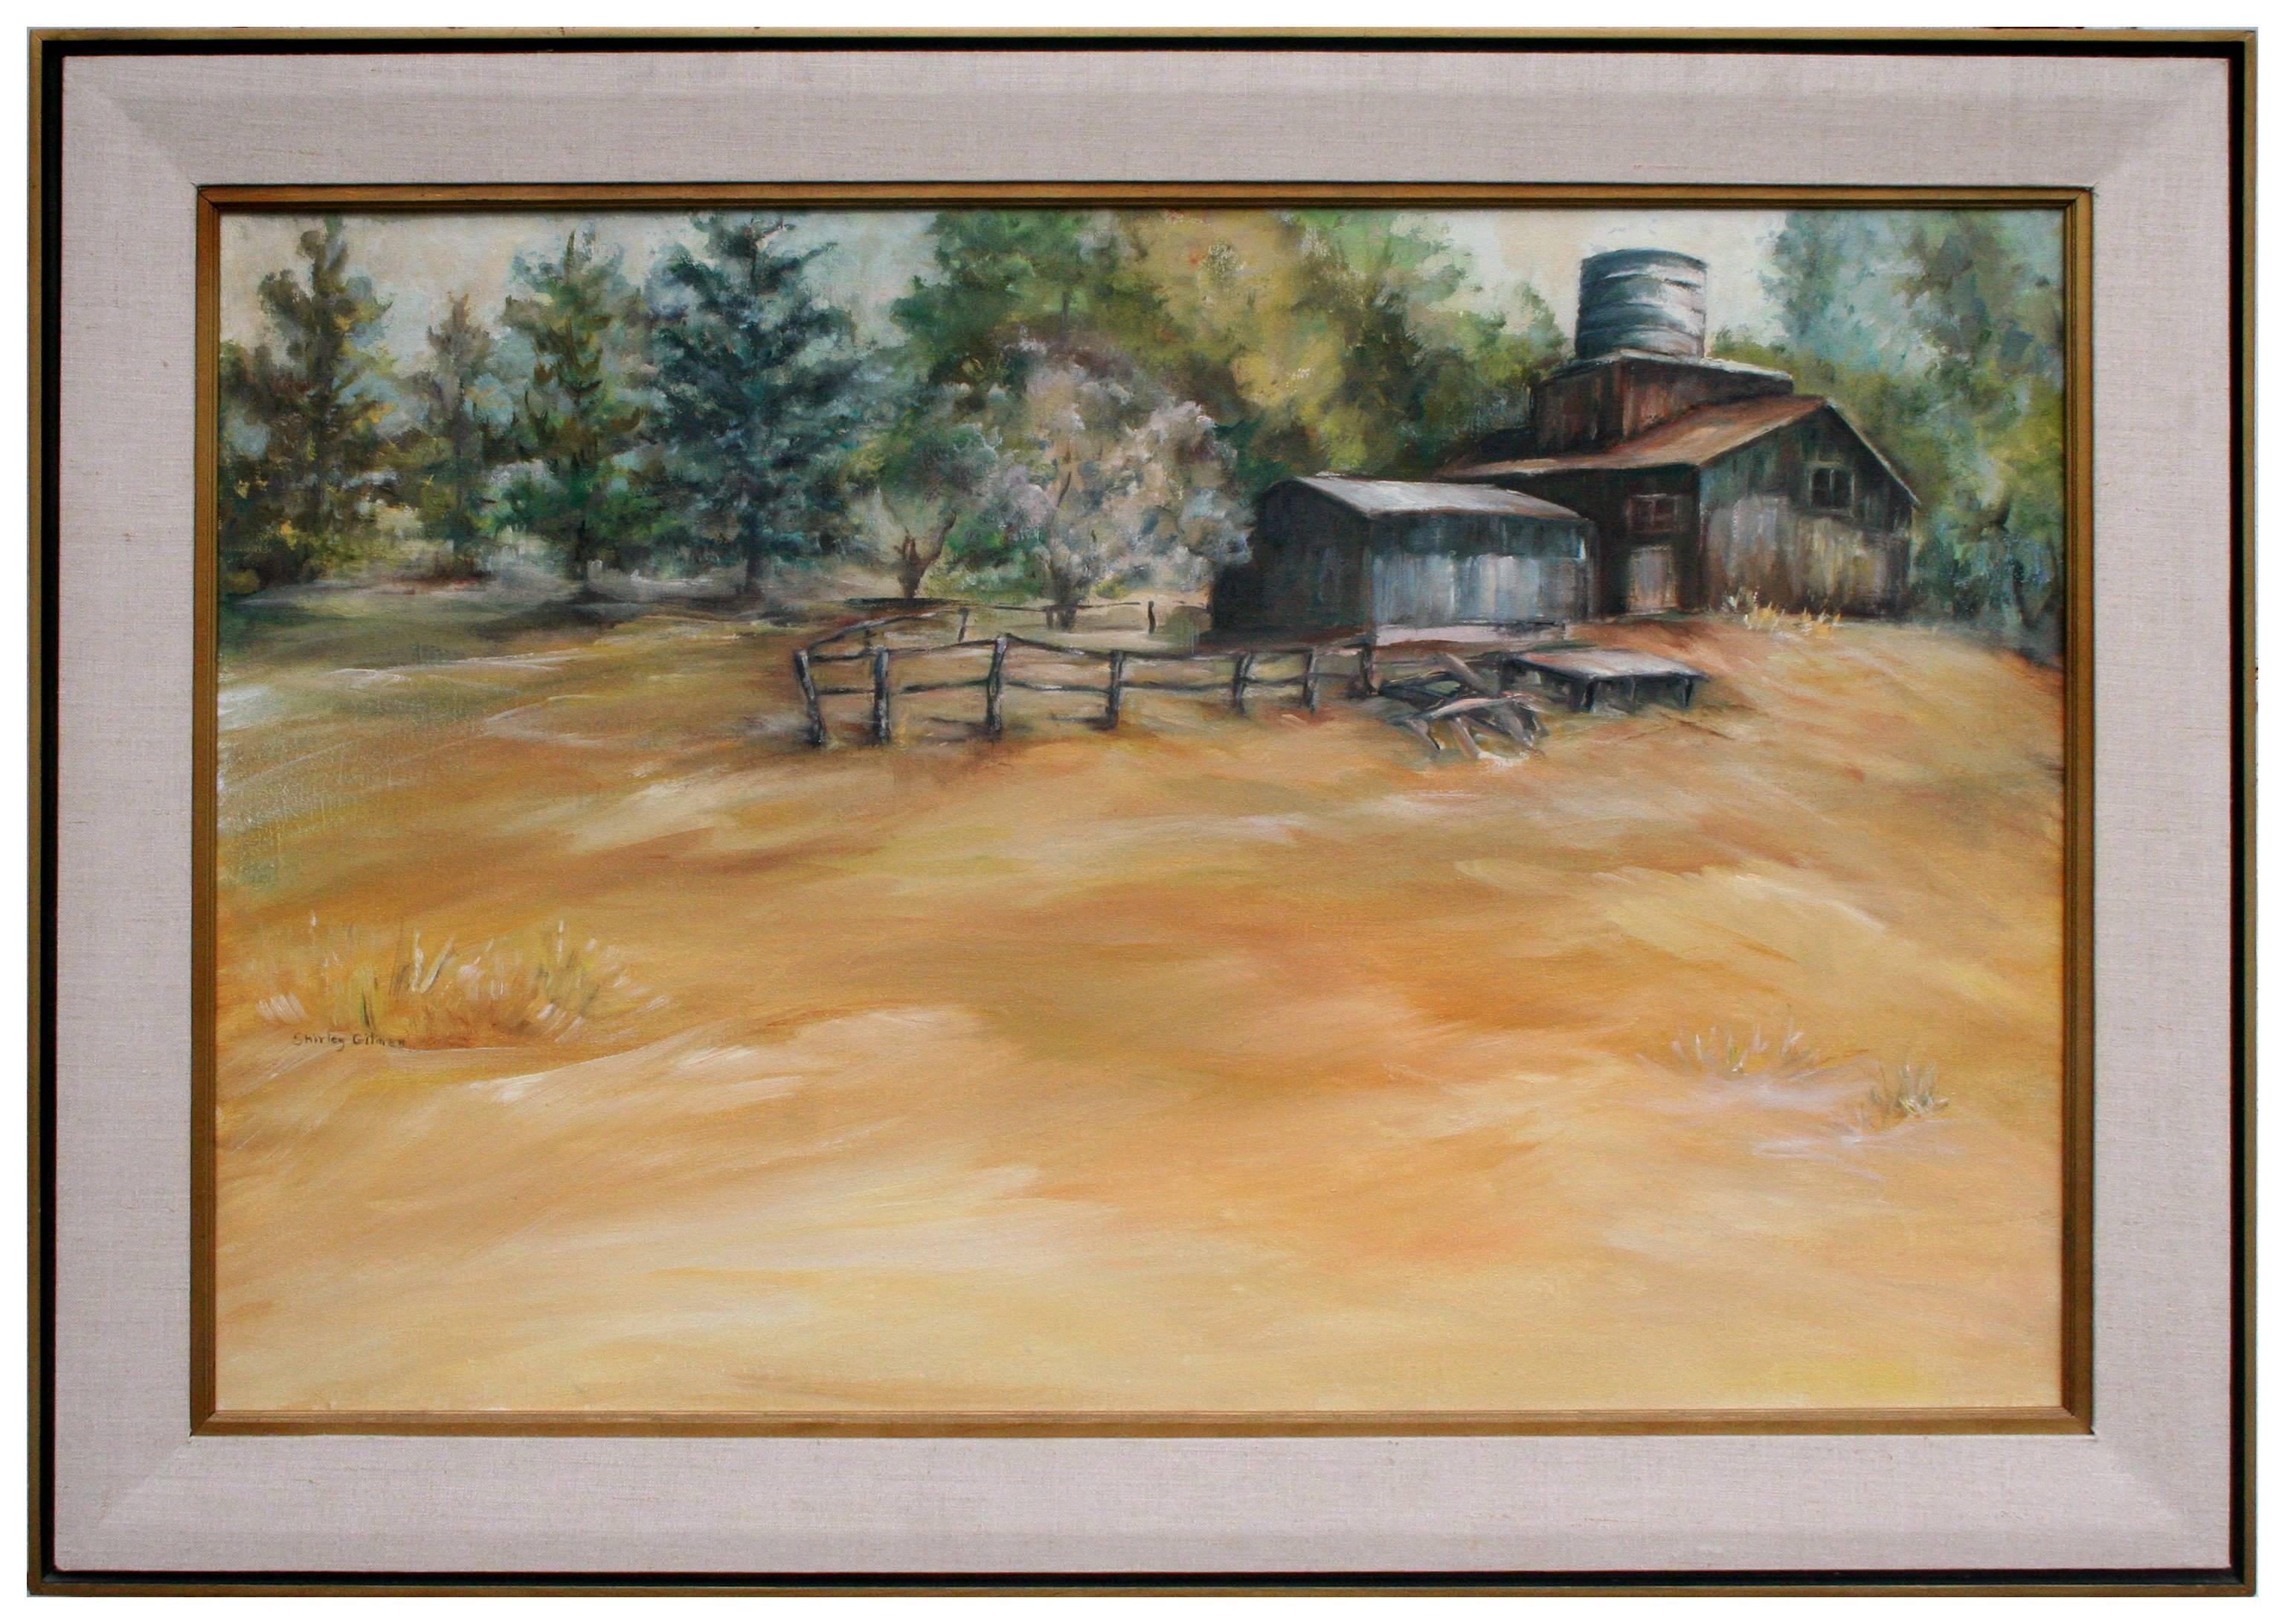 Landscape Painting Shirley Gilman - "Lazy Day in the Country" - Paysage de ferme pastorale du milieu du siècle avec grange